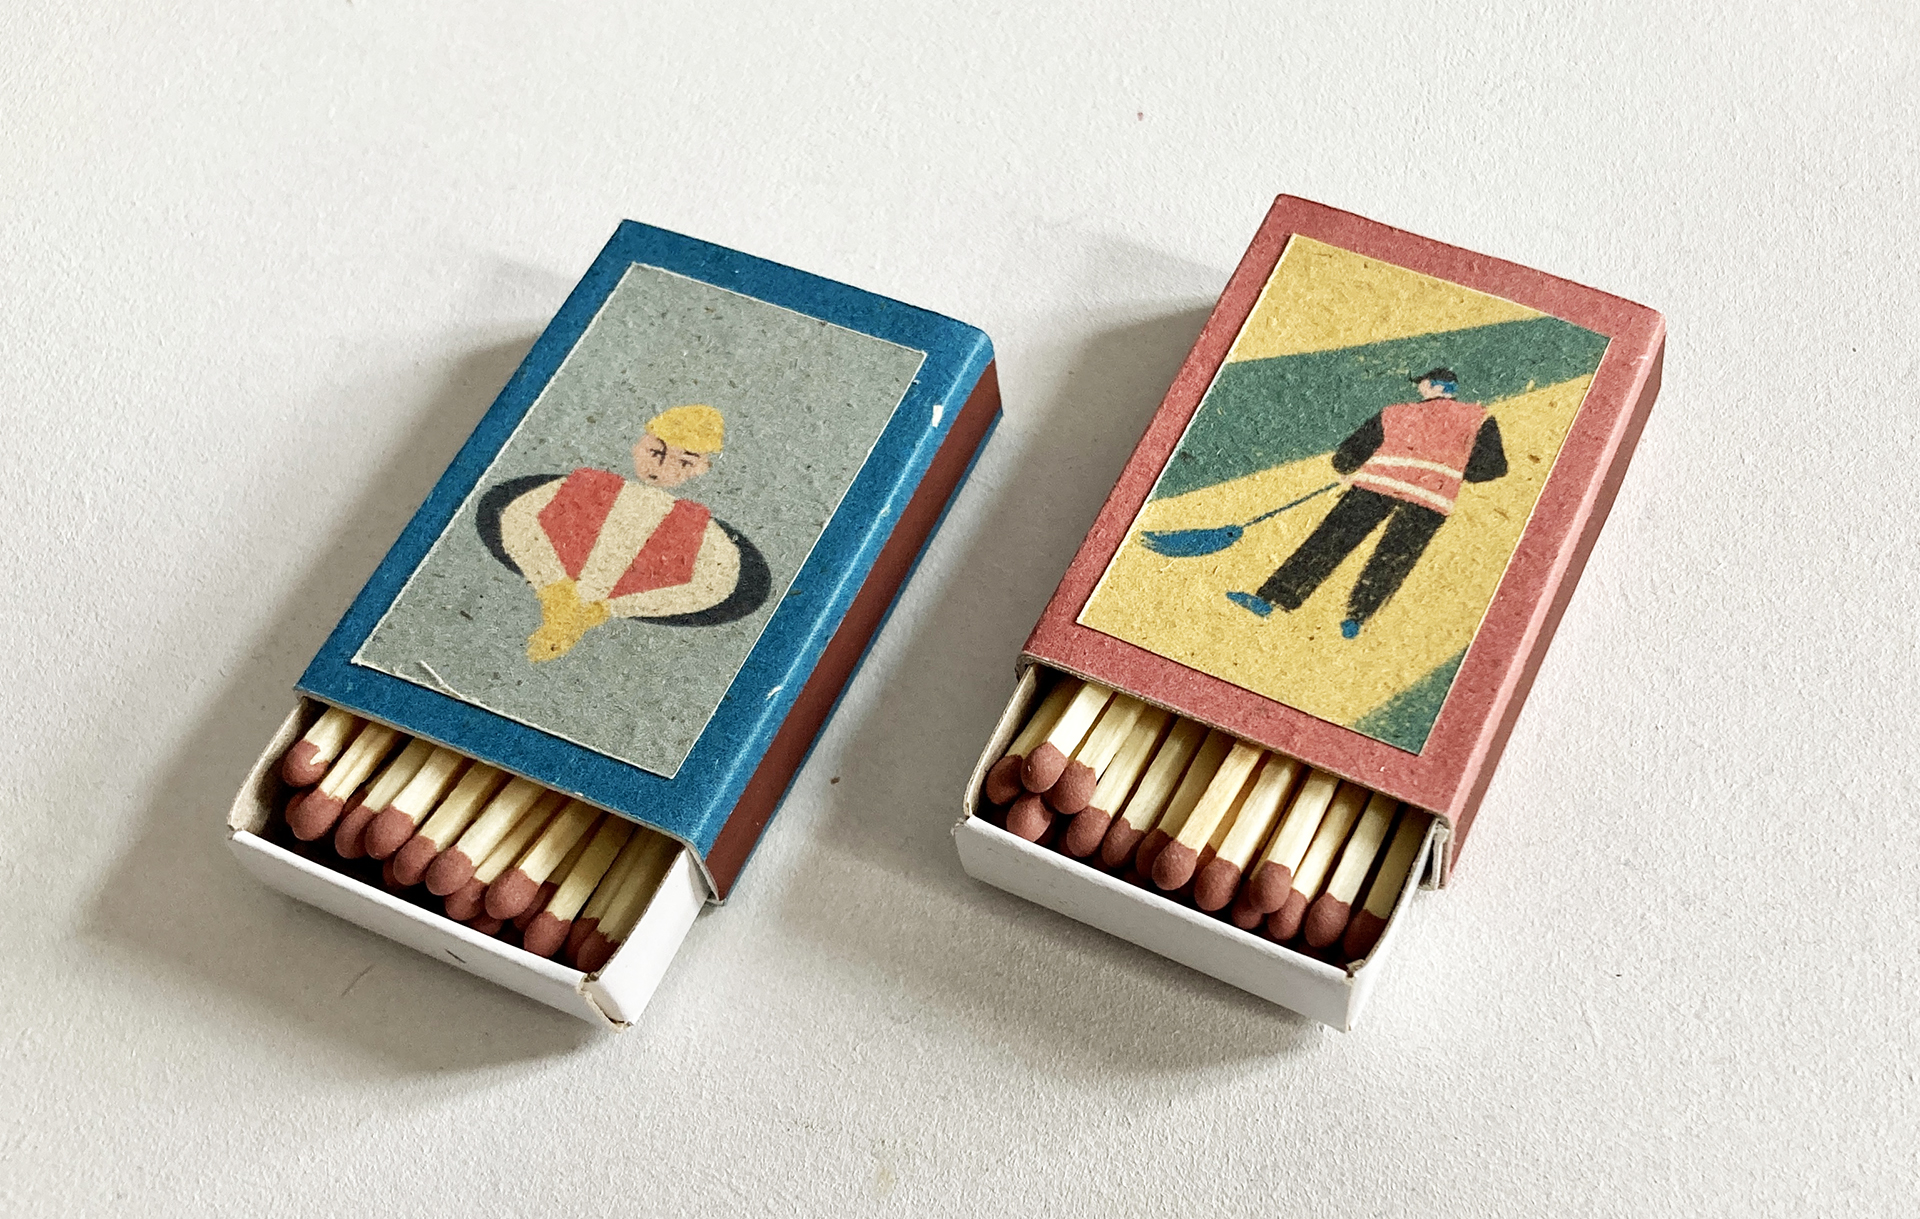 Kompozycja składa się z dwóch otwartych pudełek z zapałkami. Na każdym z pudełek autorska ilustracja. Kolorystyka: przygaszony błękit, żółć, zieleń, czerwień. Ilustracje przedstawiają osoby wykonujące mało prestiżowe zawody np. śmieciarz.